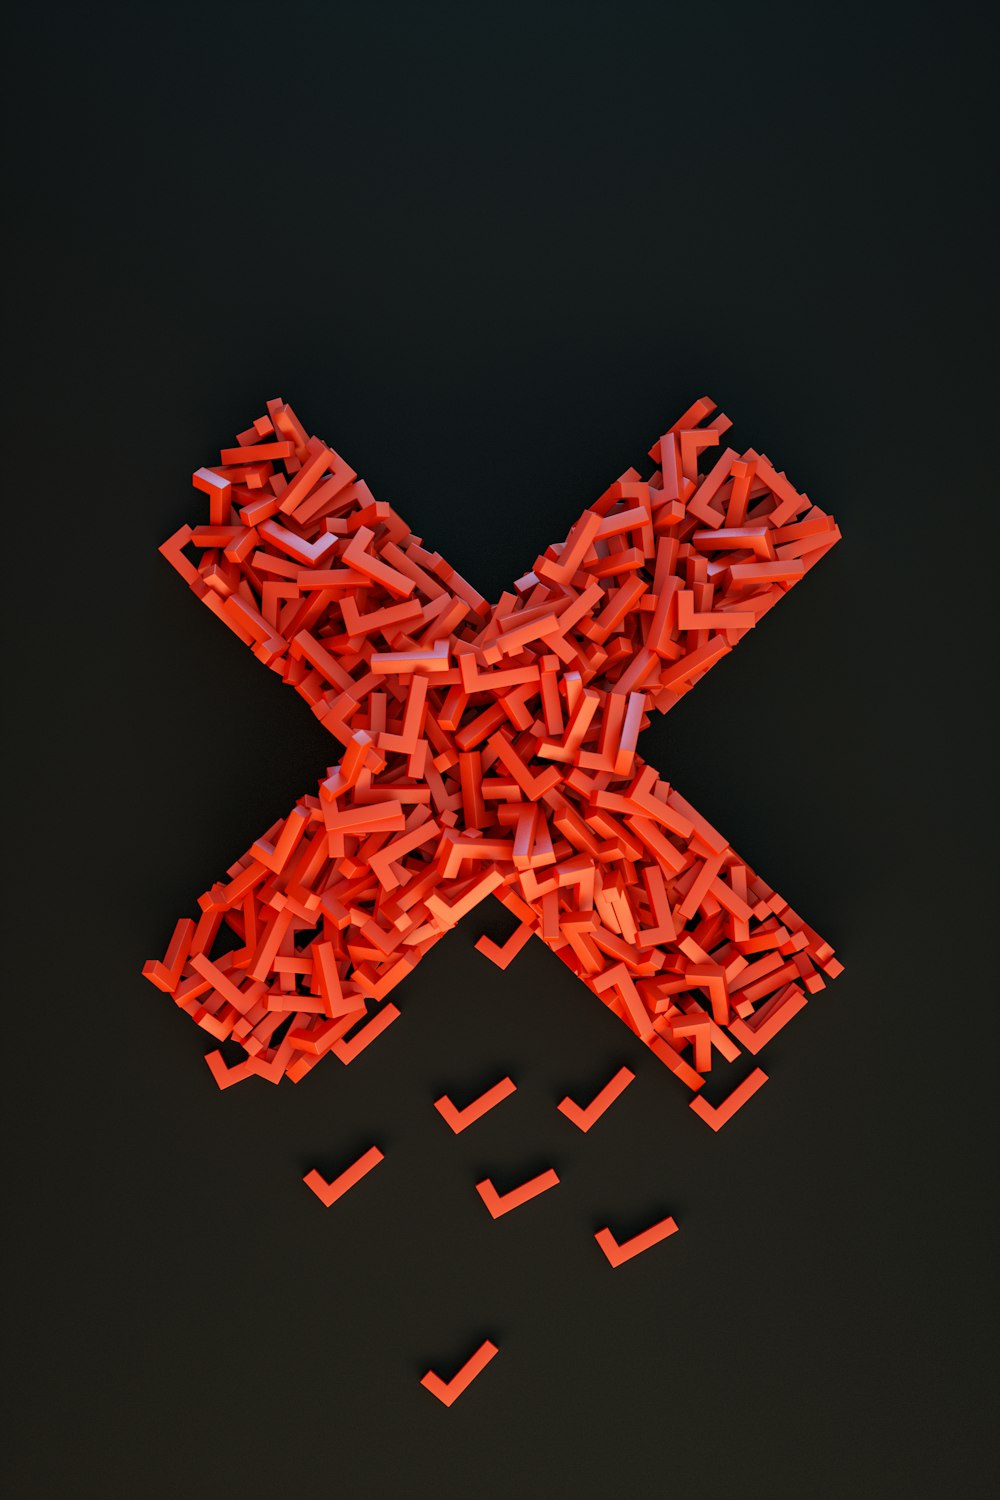 Ein Kreuz aus kleinen roten Plastikstücken